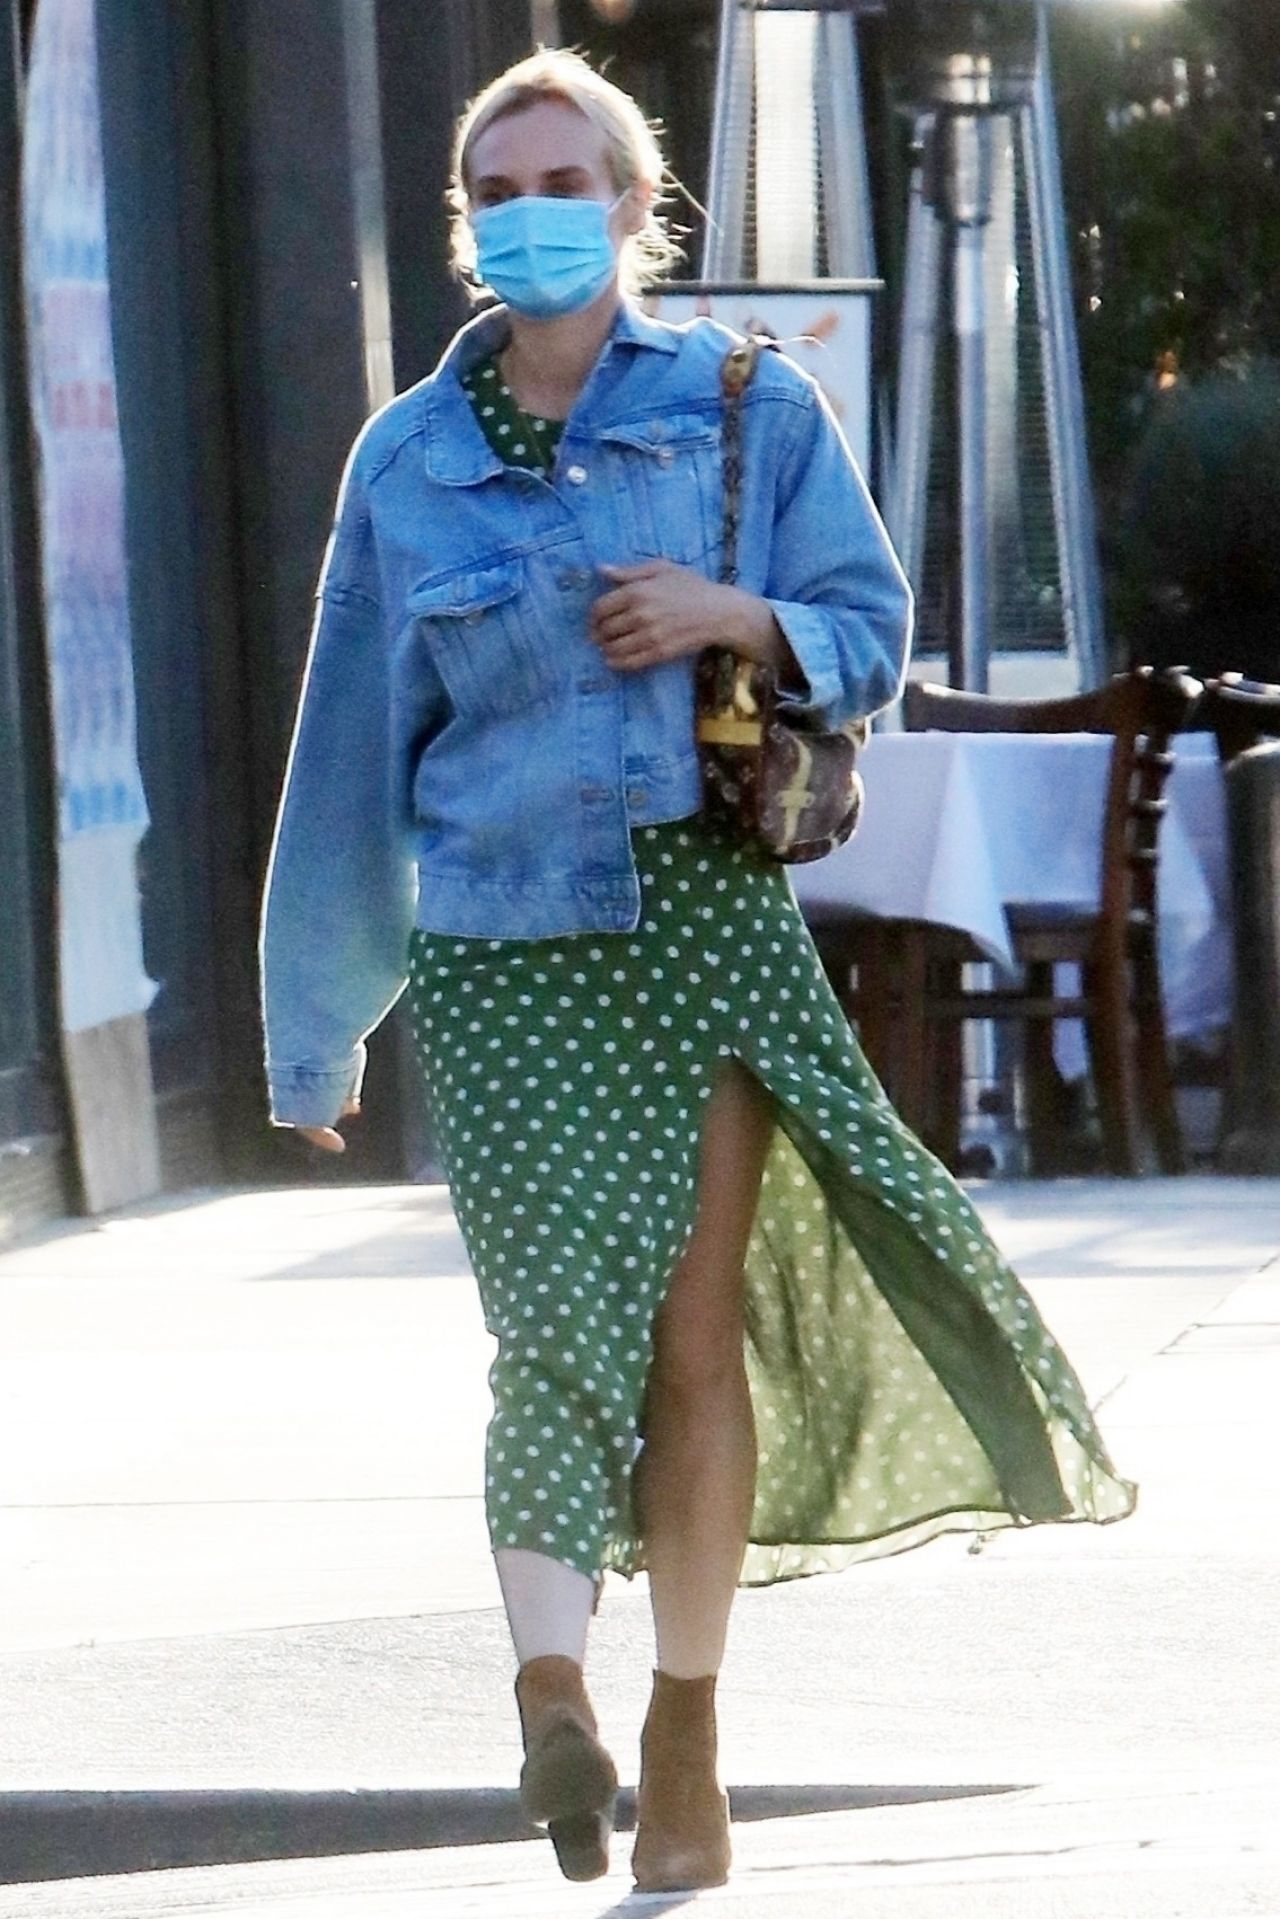 Diane Kruger West Hollywood July 23, 2020 – Star Style